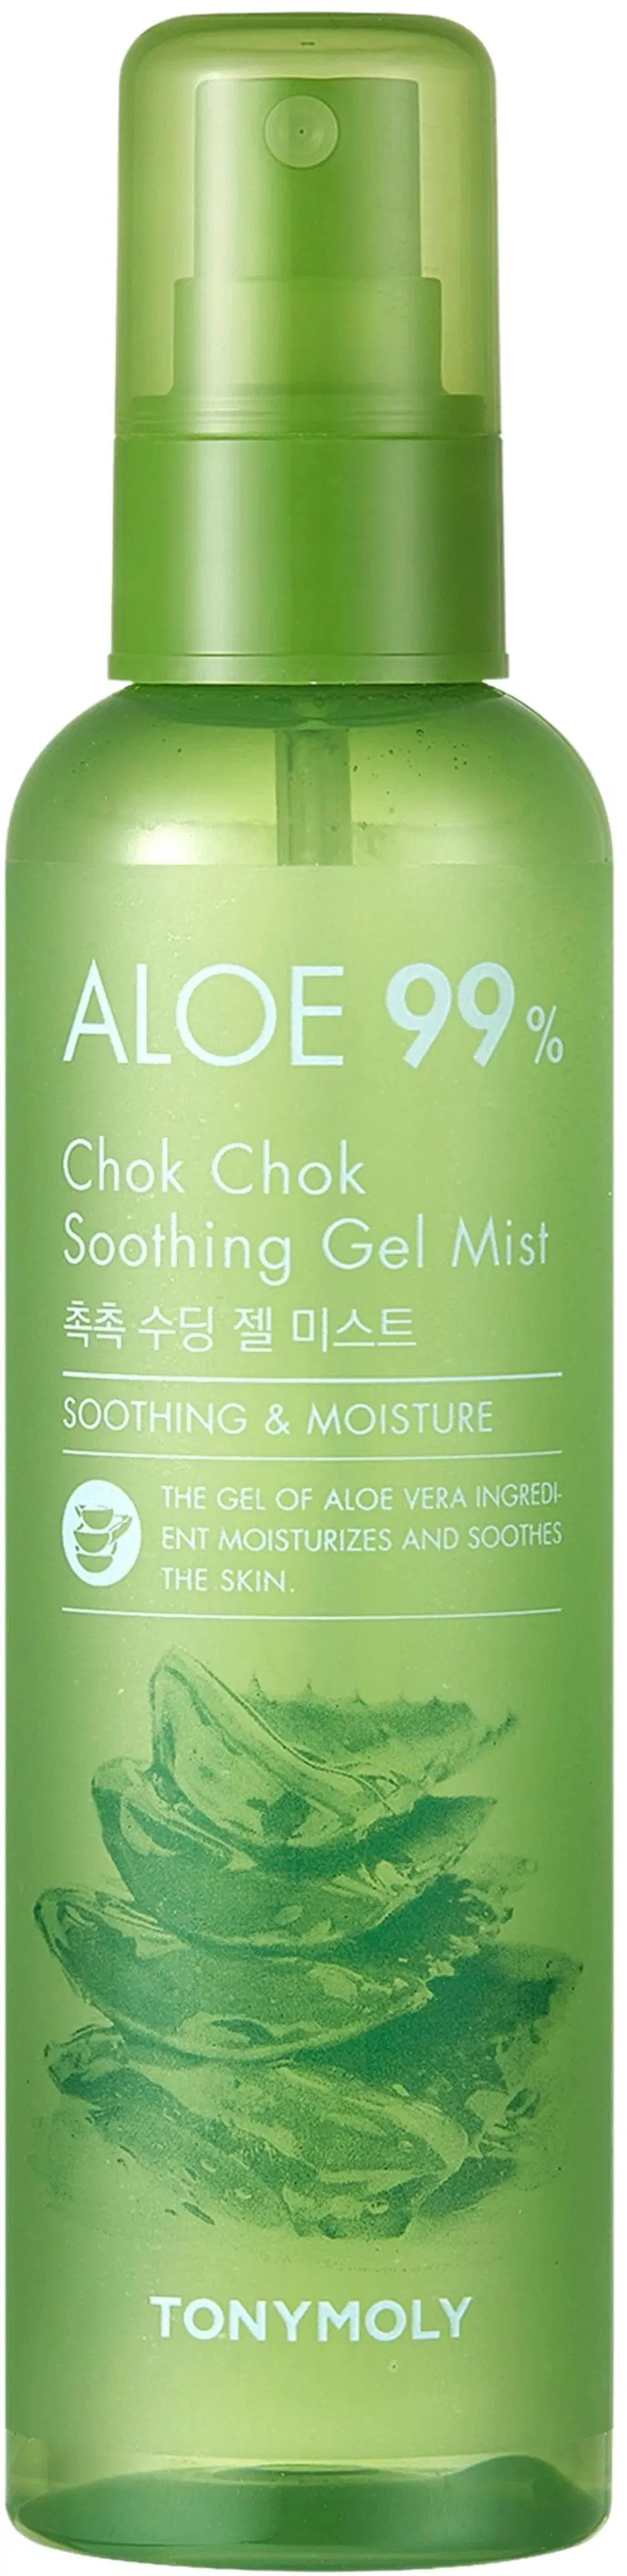 TONYMOLY Aloe Chok Chok 99% Soothing Gel Mist kasvosuihke 150ml